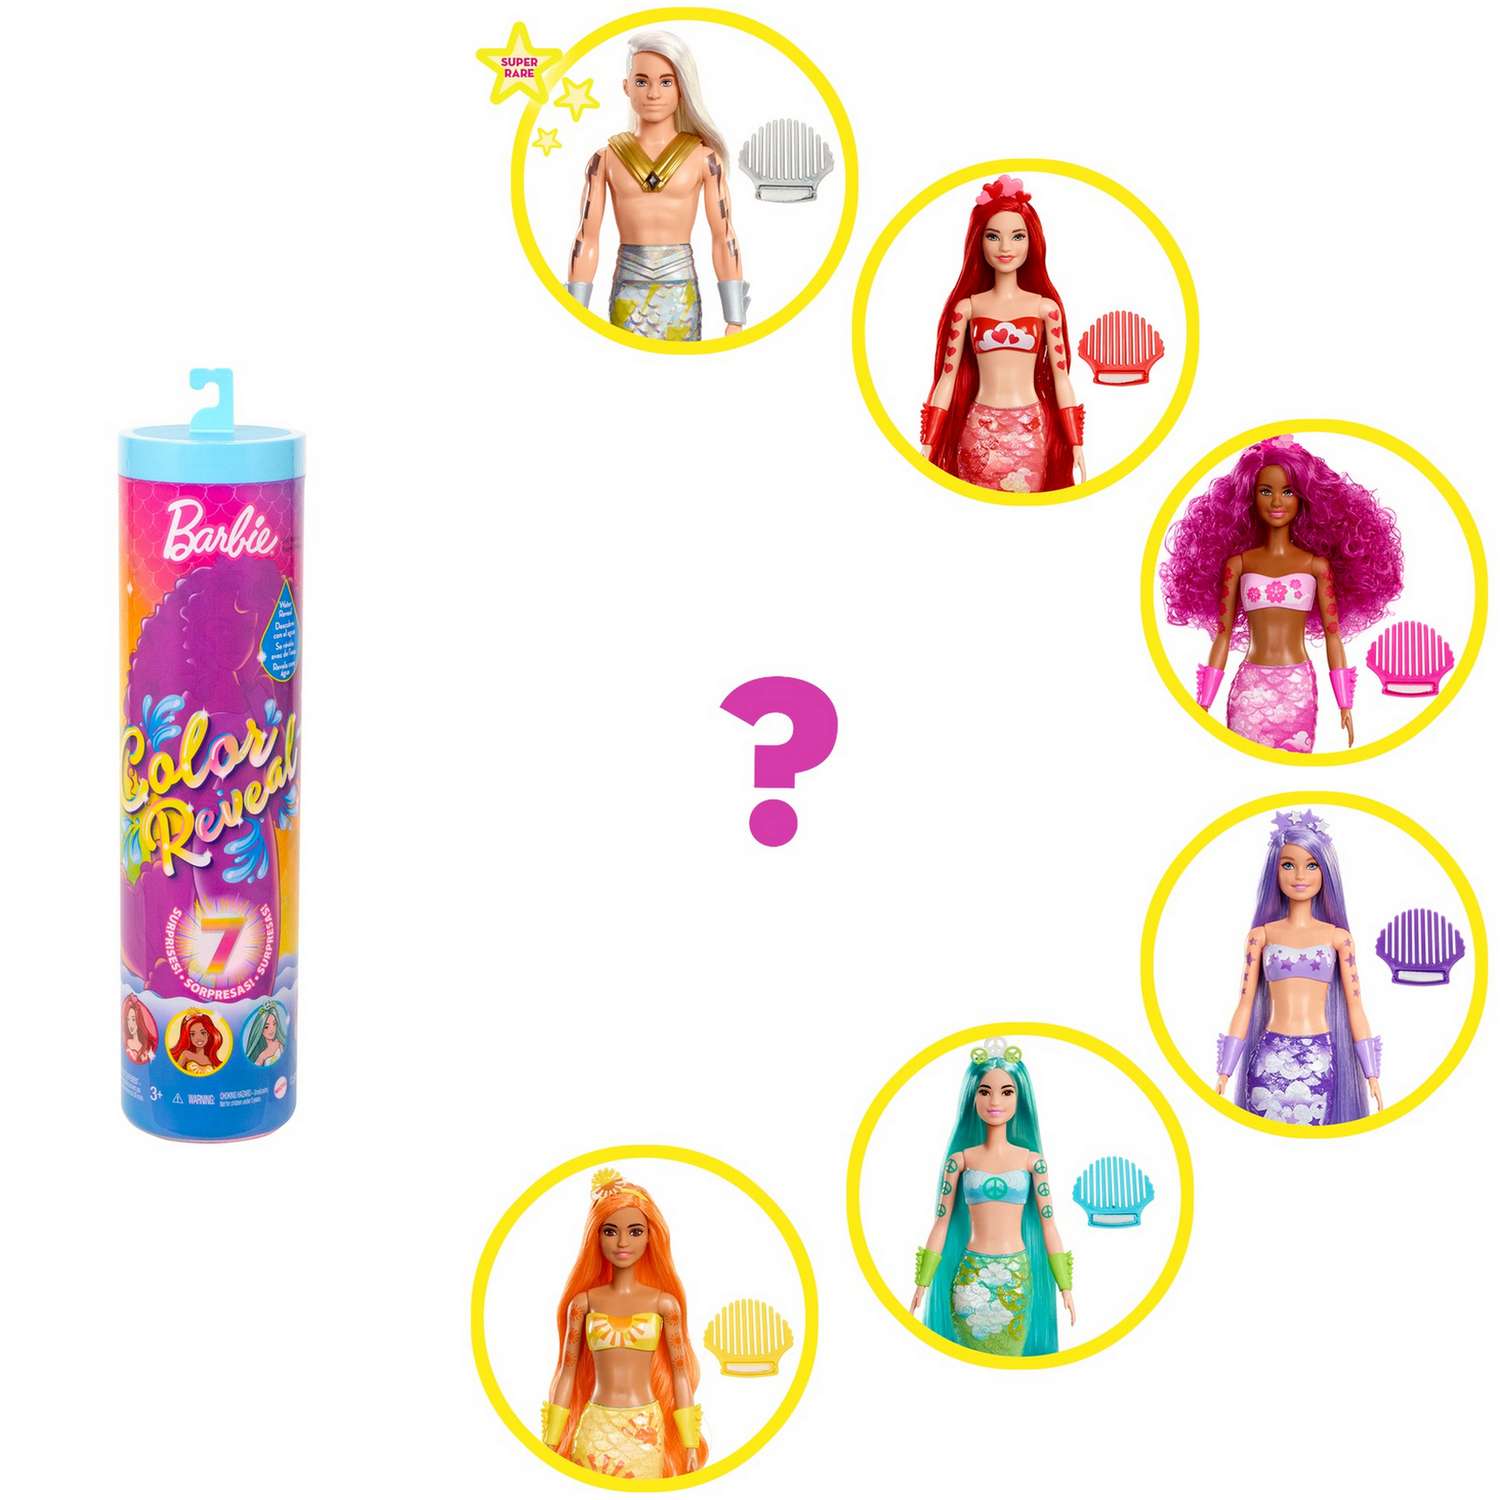 Кукла Barbie Радужная русалка в непрозрачной упаковке (Сюрприз) HCC46 HCC46 - фото 3